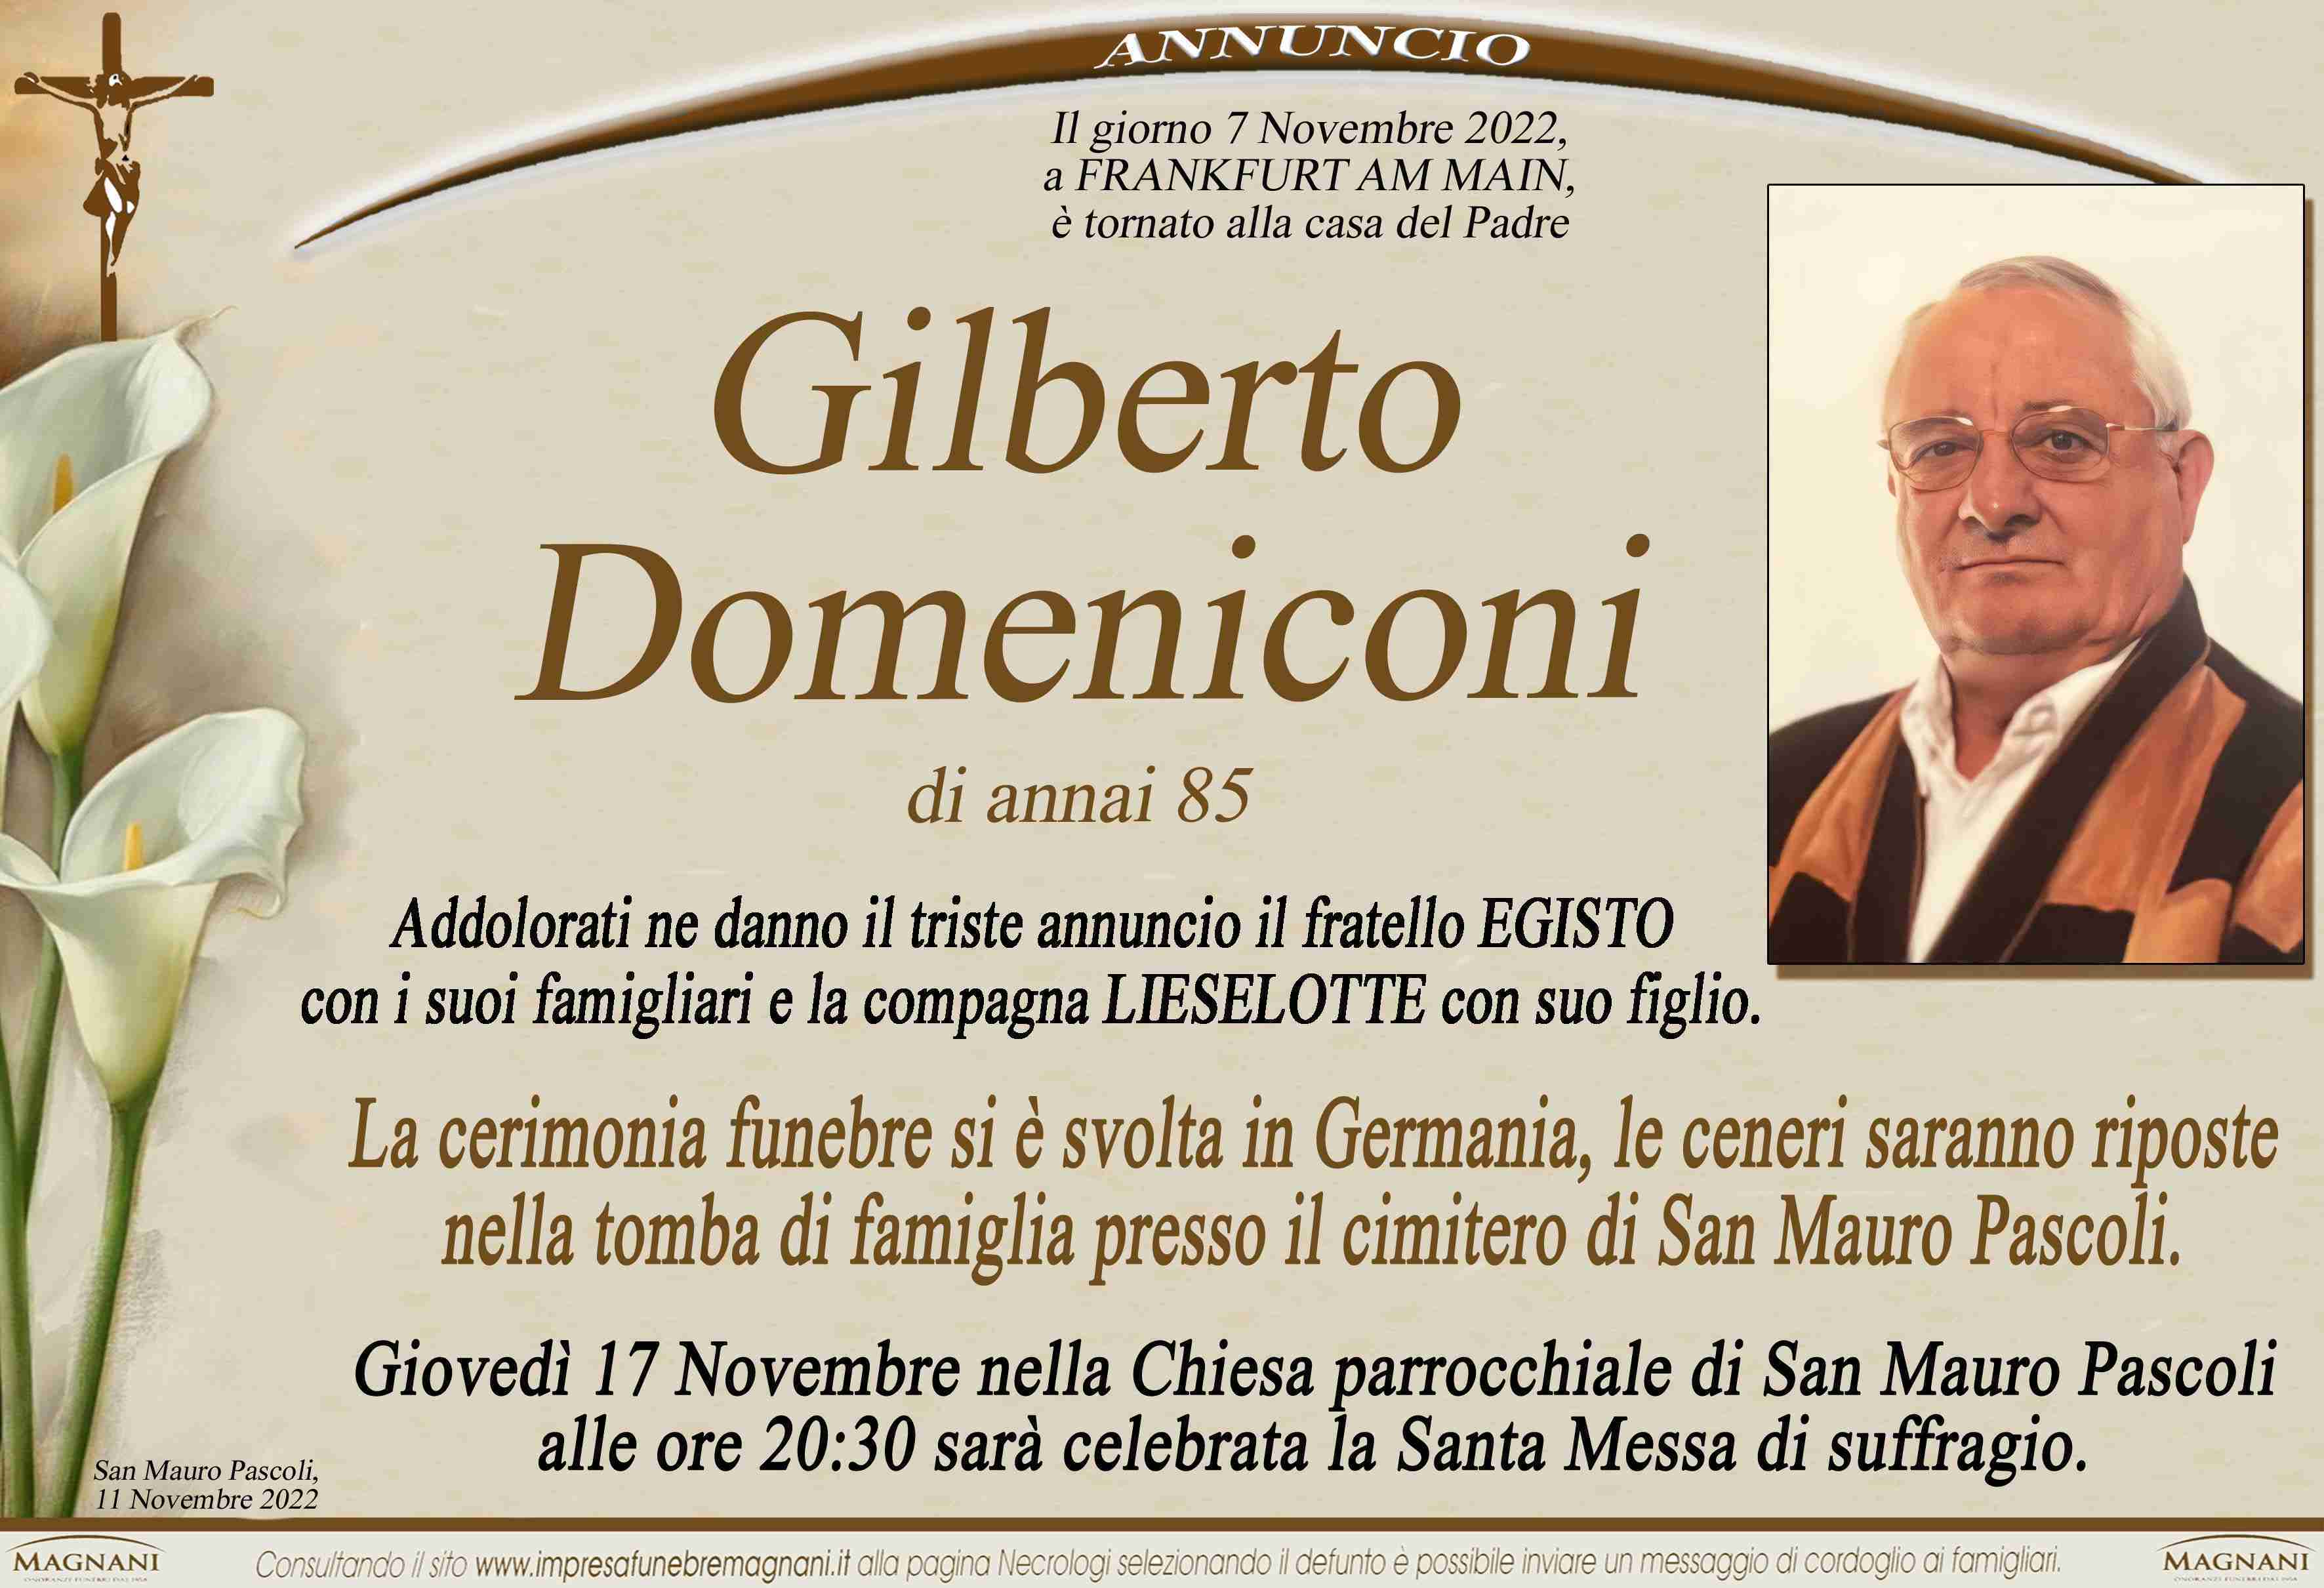 Gilberto Domeniconi